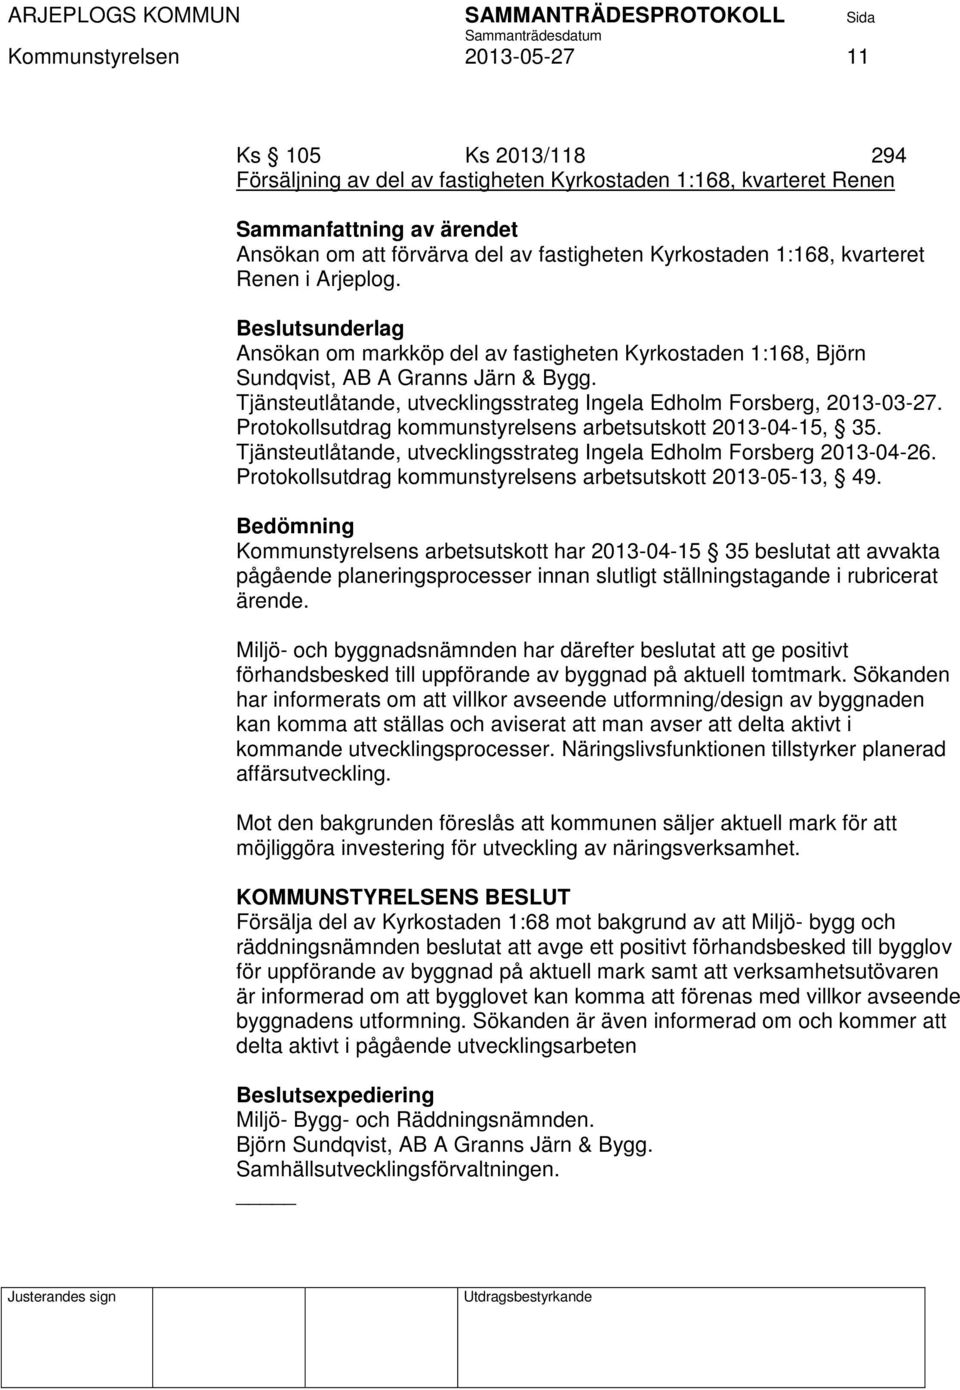 Tjänsteutlåtande, utvecklingsstrateg Ingela Edholm Forsberg, 2013-03-27. Protokollsutdrag kommunstyrelsens arbetsutskott 2013-04-15, 35.